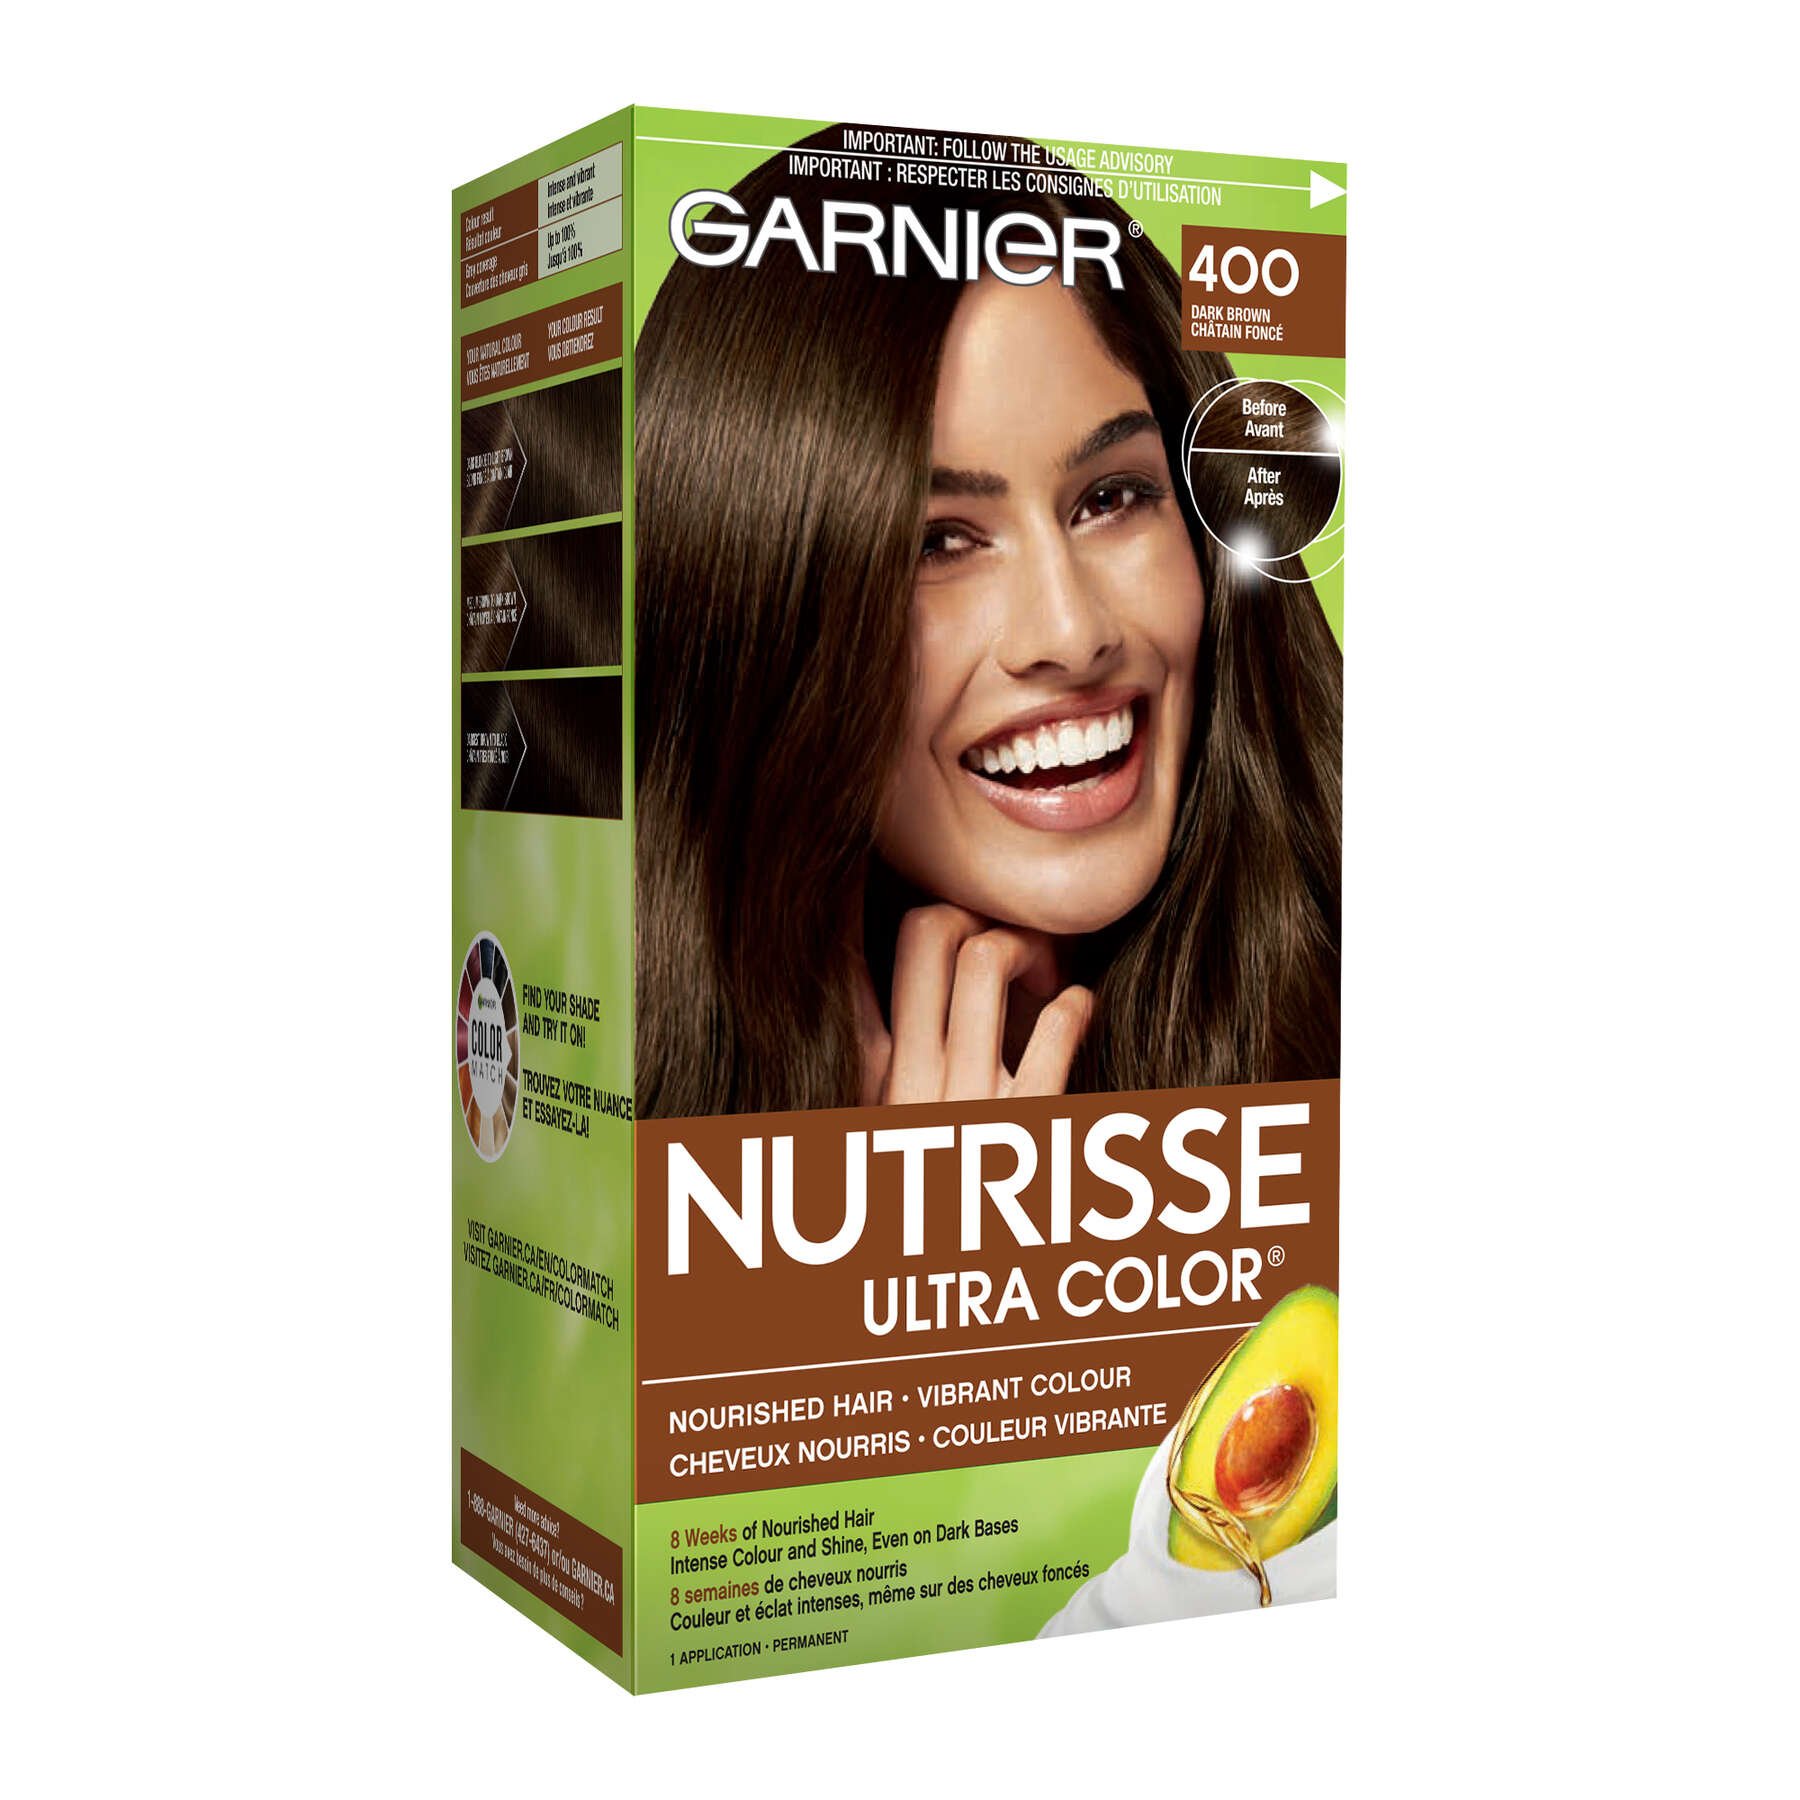 garnier hair dye nutrisse ultra color 400 dark brown 603084469475 boxed